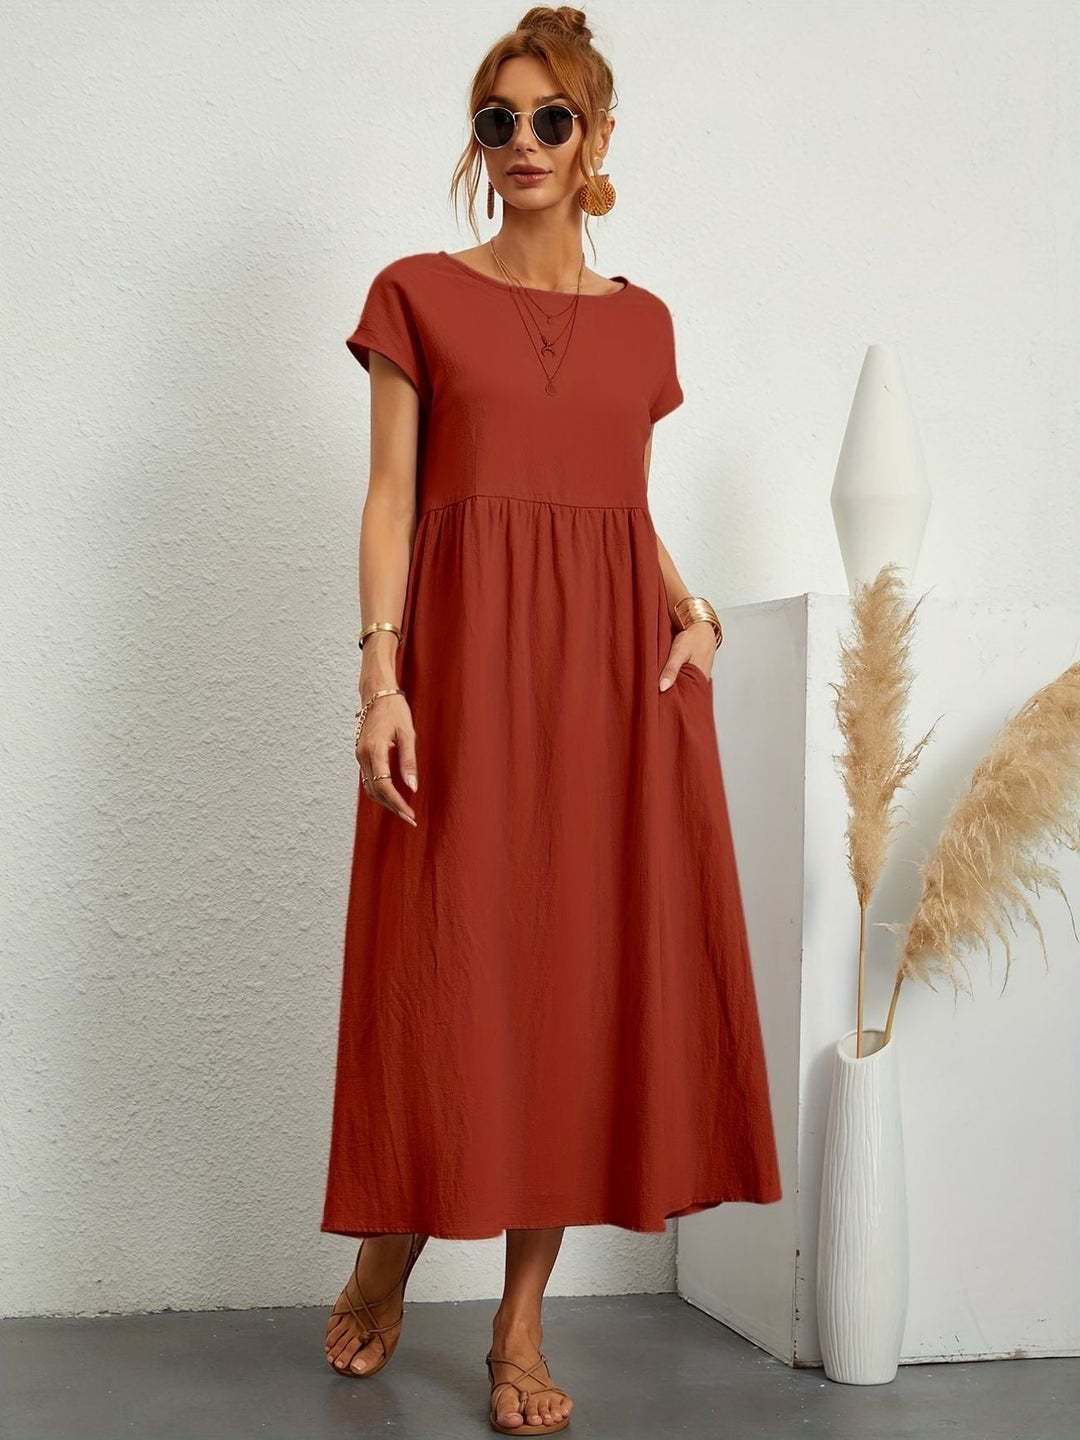 Ärmelloses unifarbenes Damenkleid aus Baumwolle und Leinen